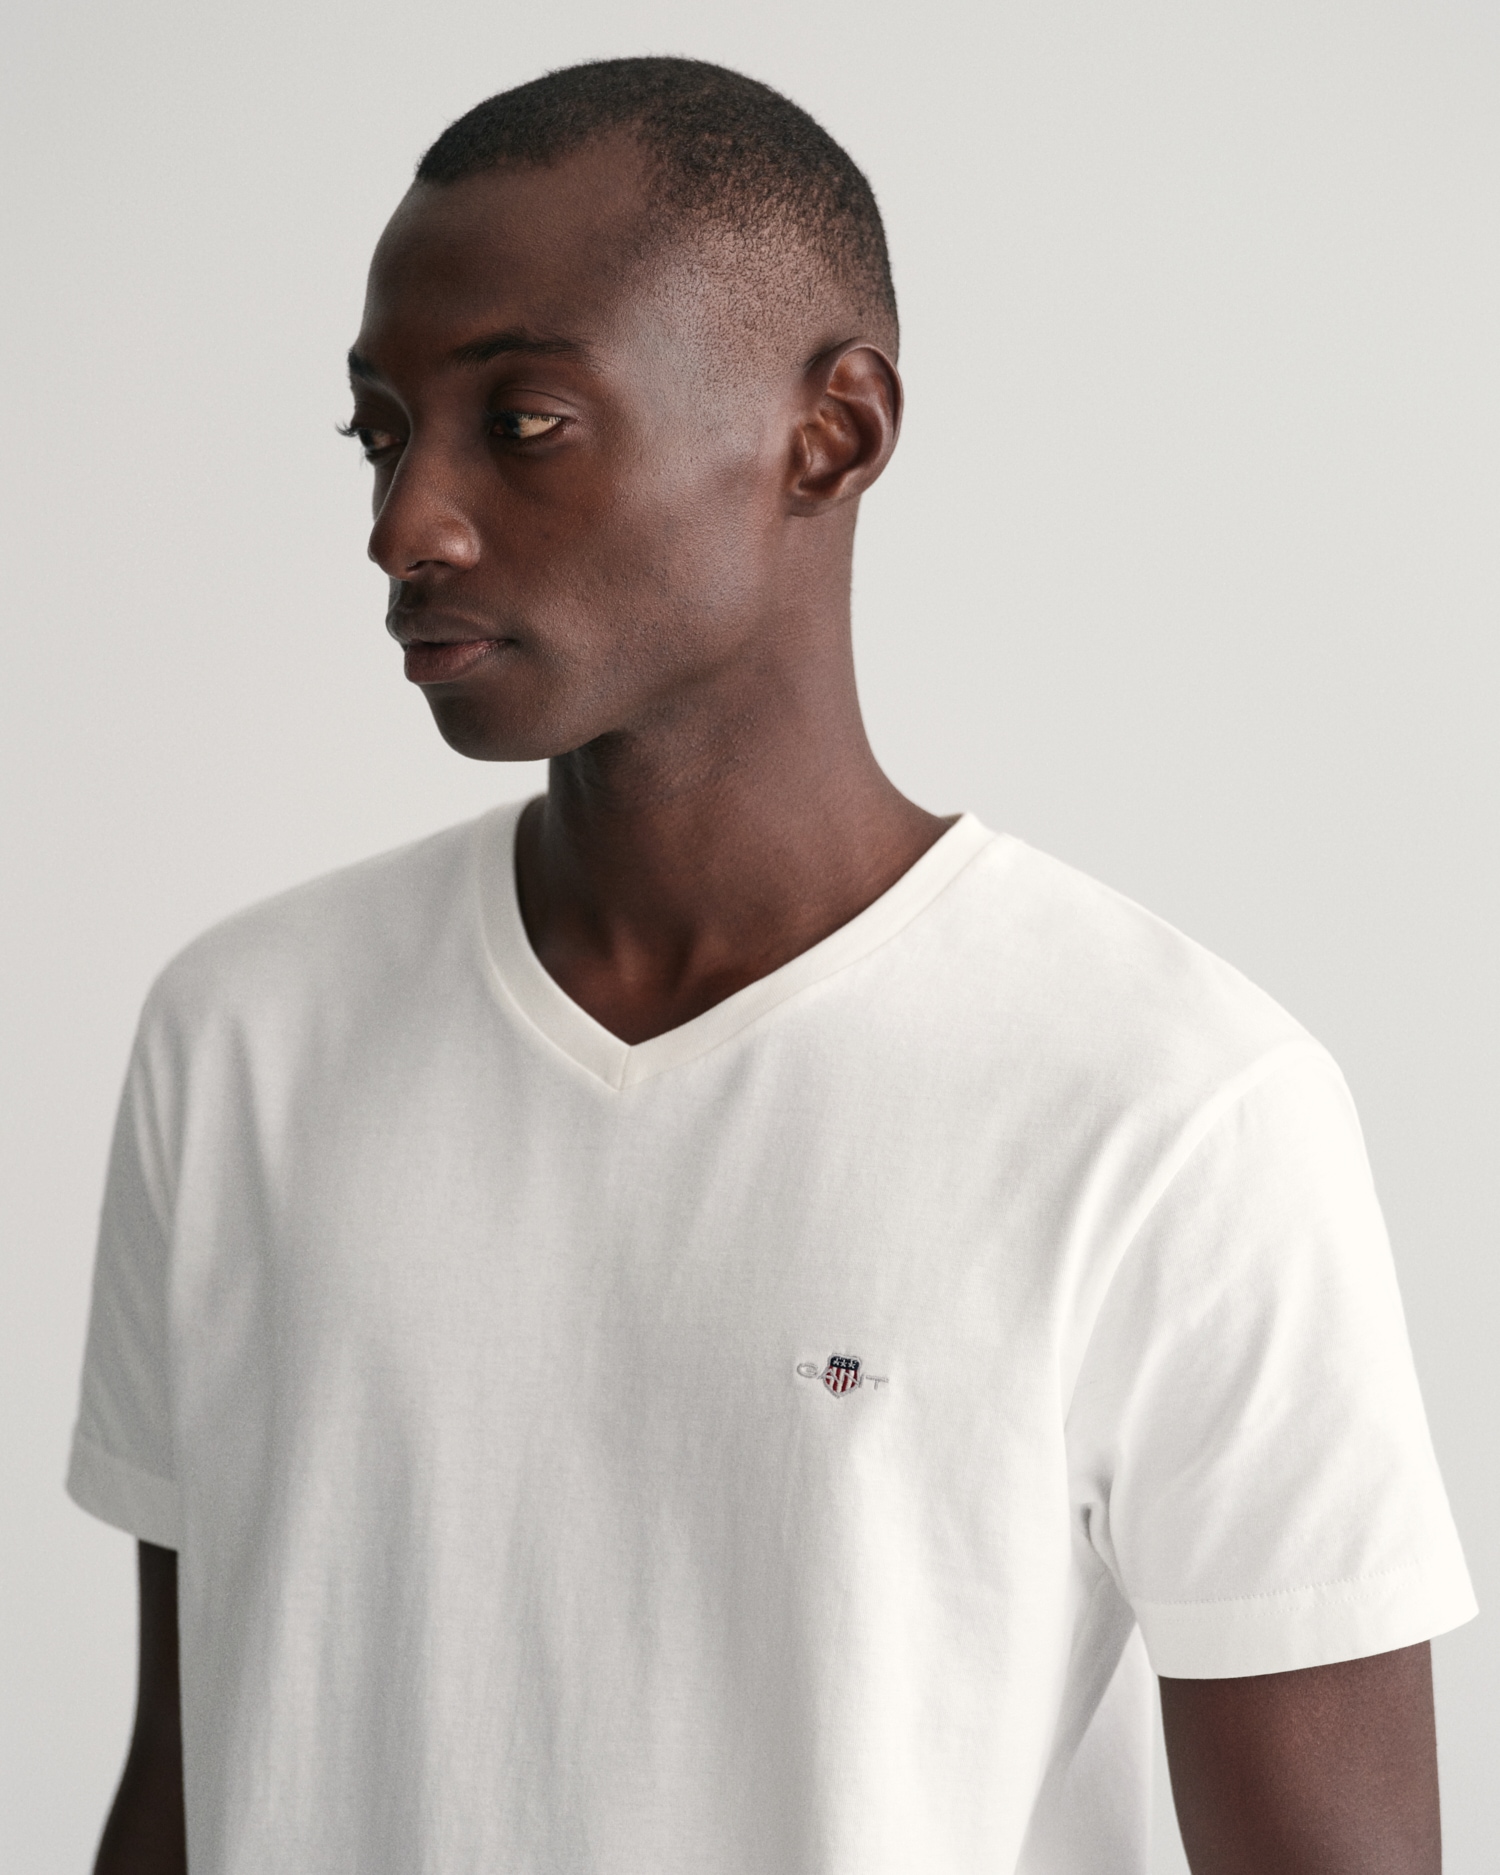 »SLIM online auf mit kleinen bestellen der Brust V-NECK SHIELD Gant T-Shirt T-SHIRT«, einer Logostickerei